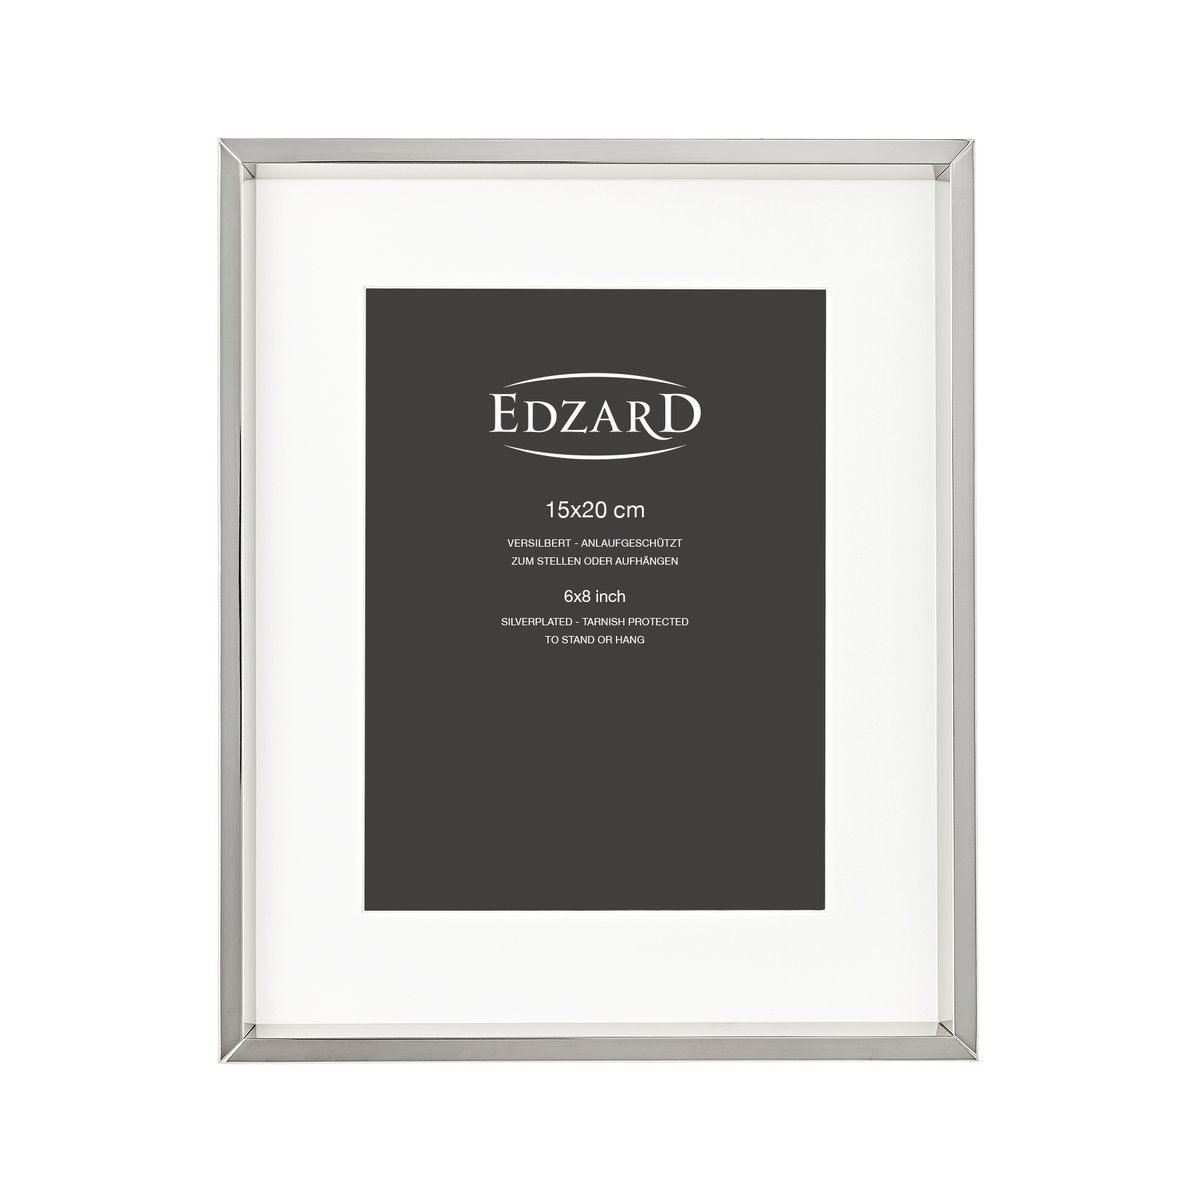 EDZARD Fotorahmen Bilderrahmen Perugia für Foto 15 x 20 cm, versilbert und anlaufgeschützt, mit 2 Aufhänger - HomeDesign Knaus